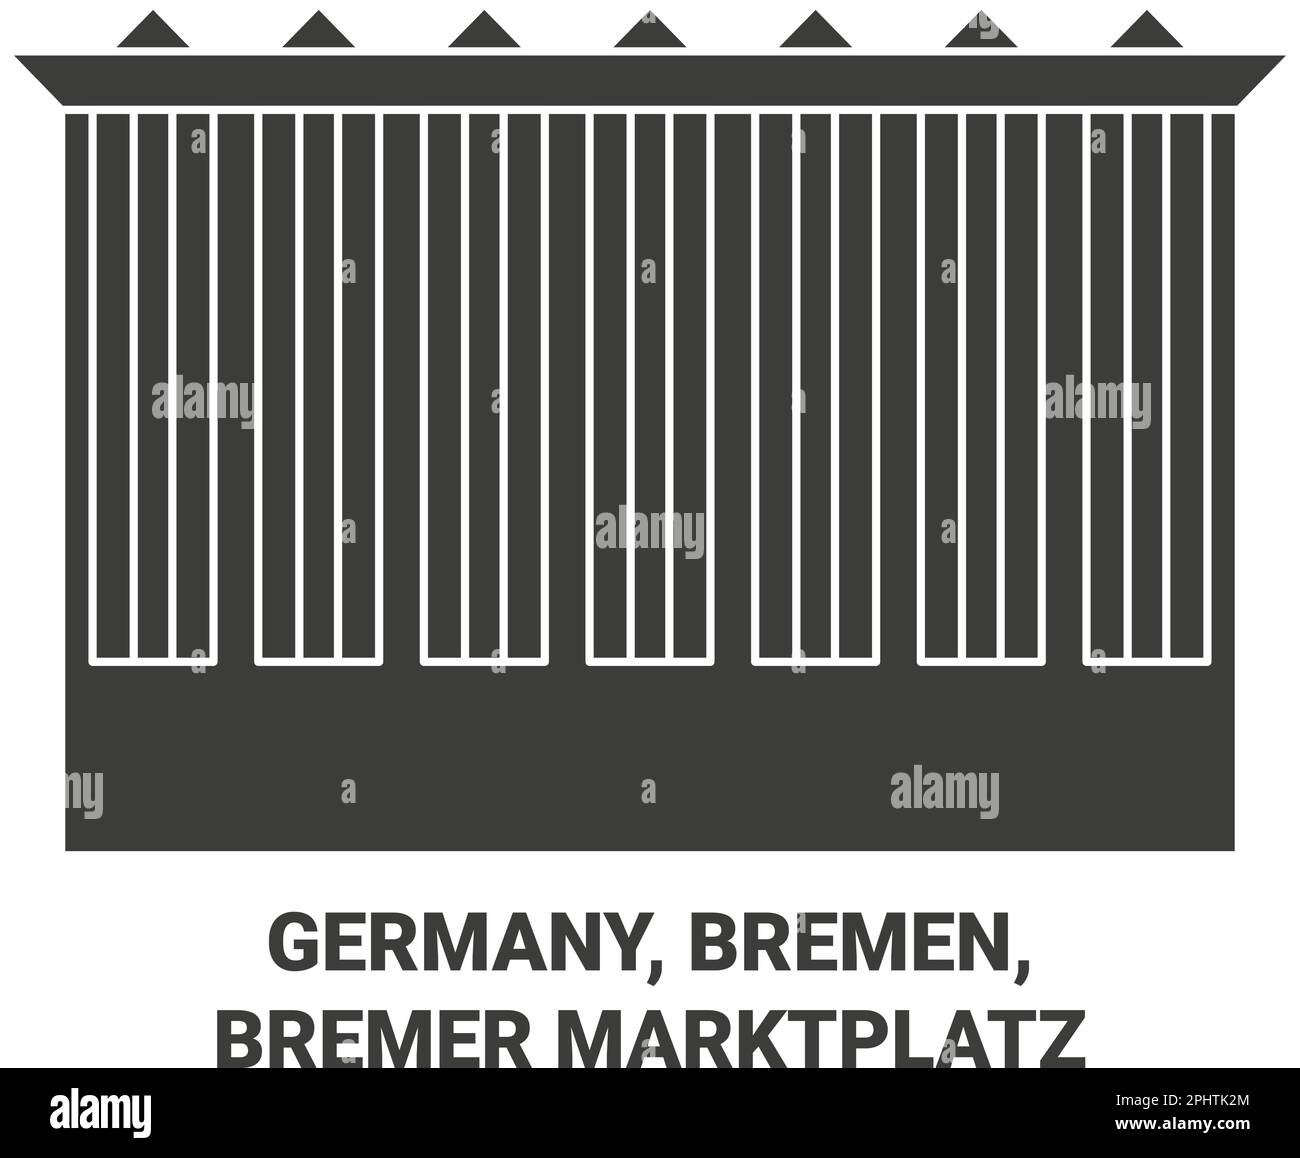 Alemania, Bremen, Bremer Marktplatz ilustración vectorial de referencia de viaje Ilustración del Vector